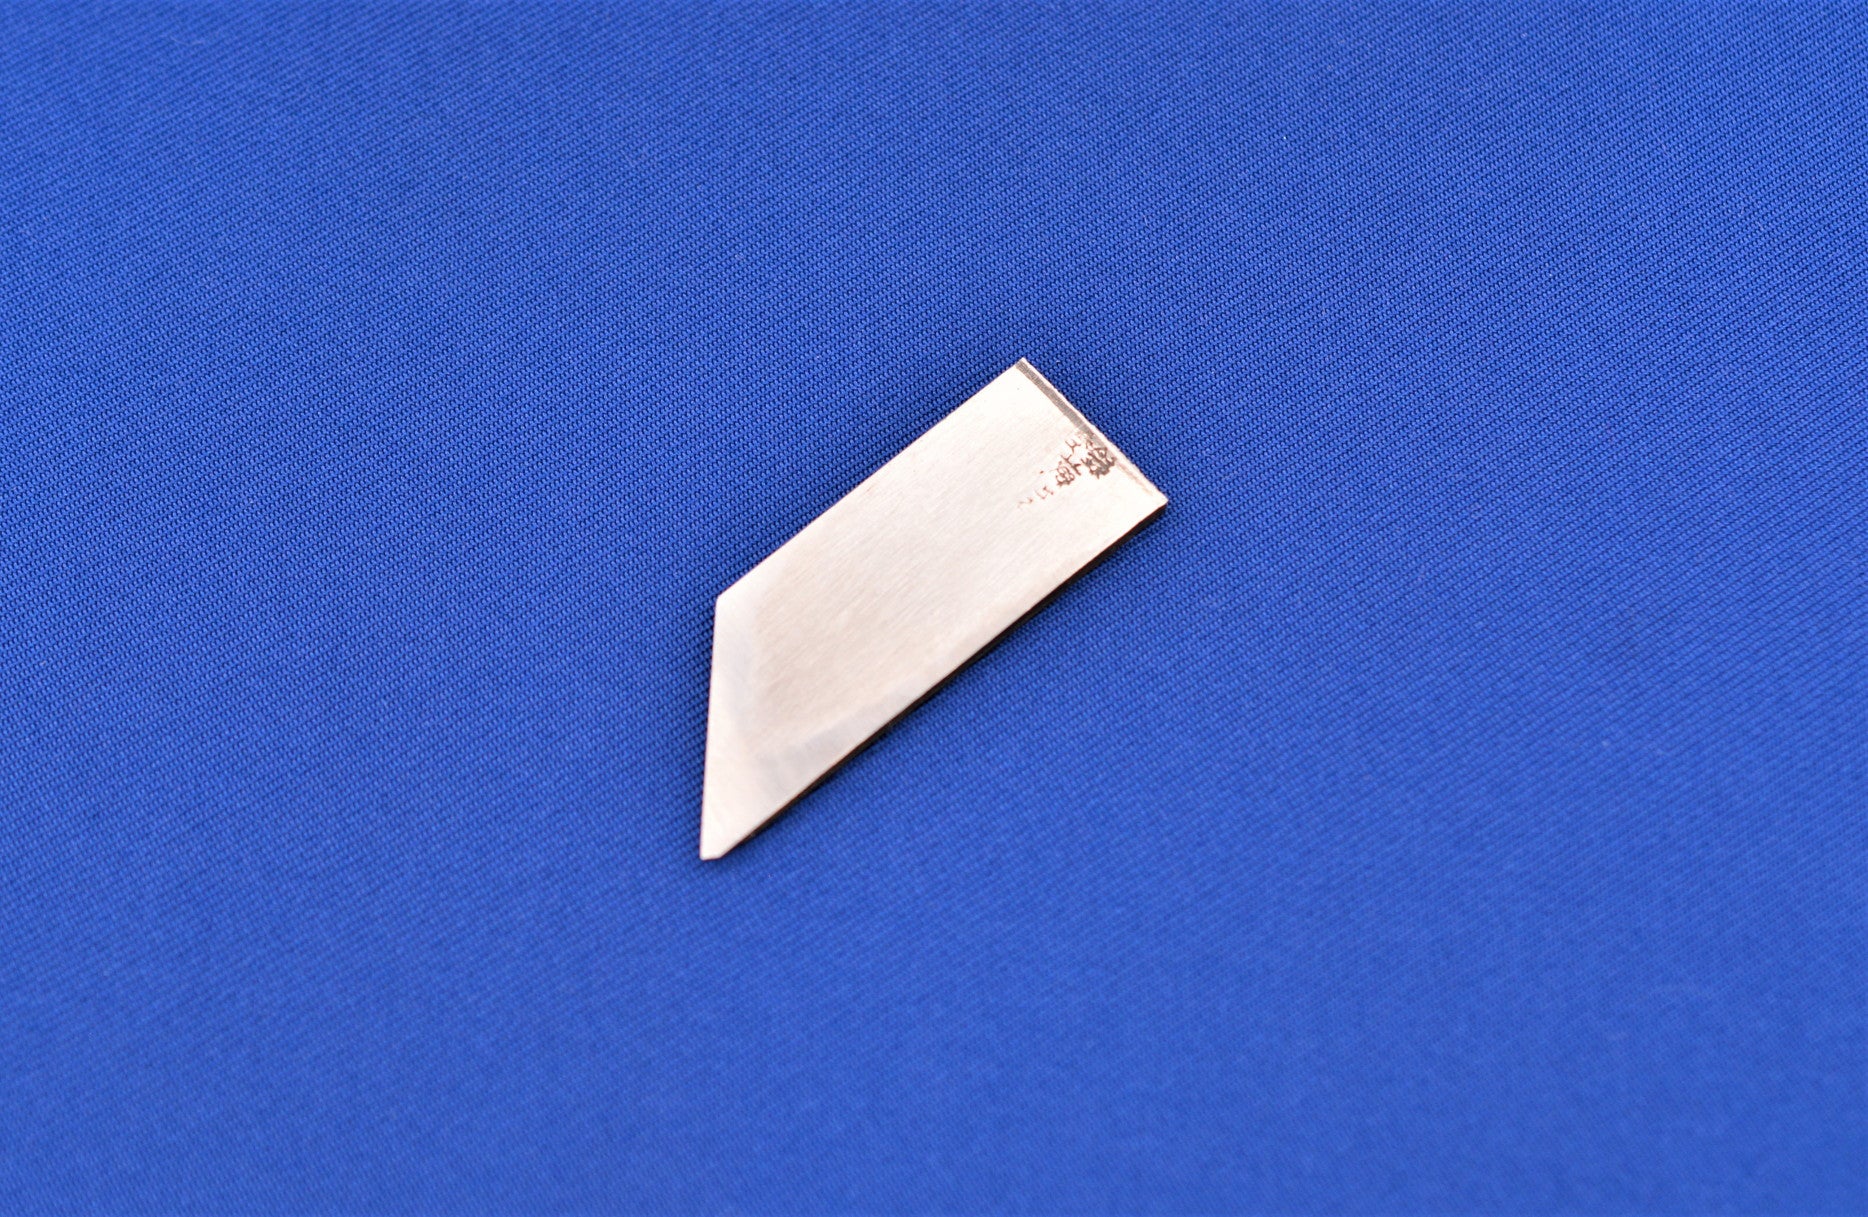 Baishinshi Marking Gauge Blade 15mm for left-handed